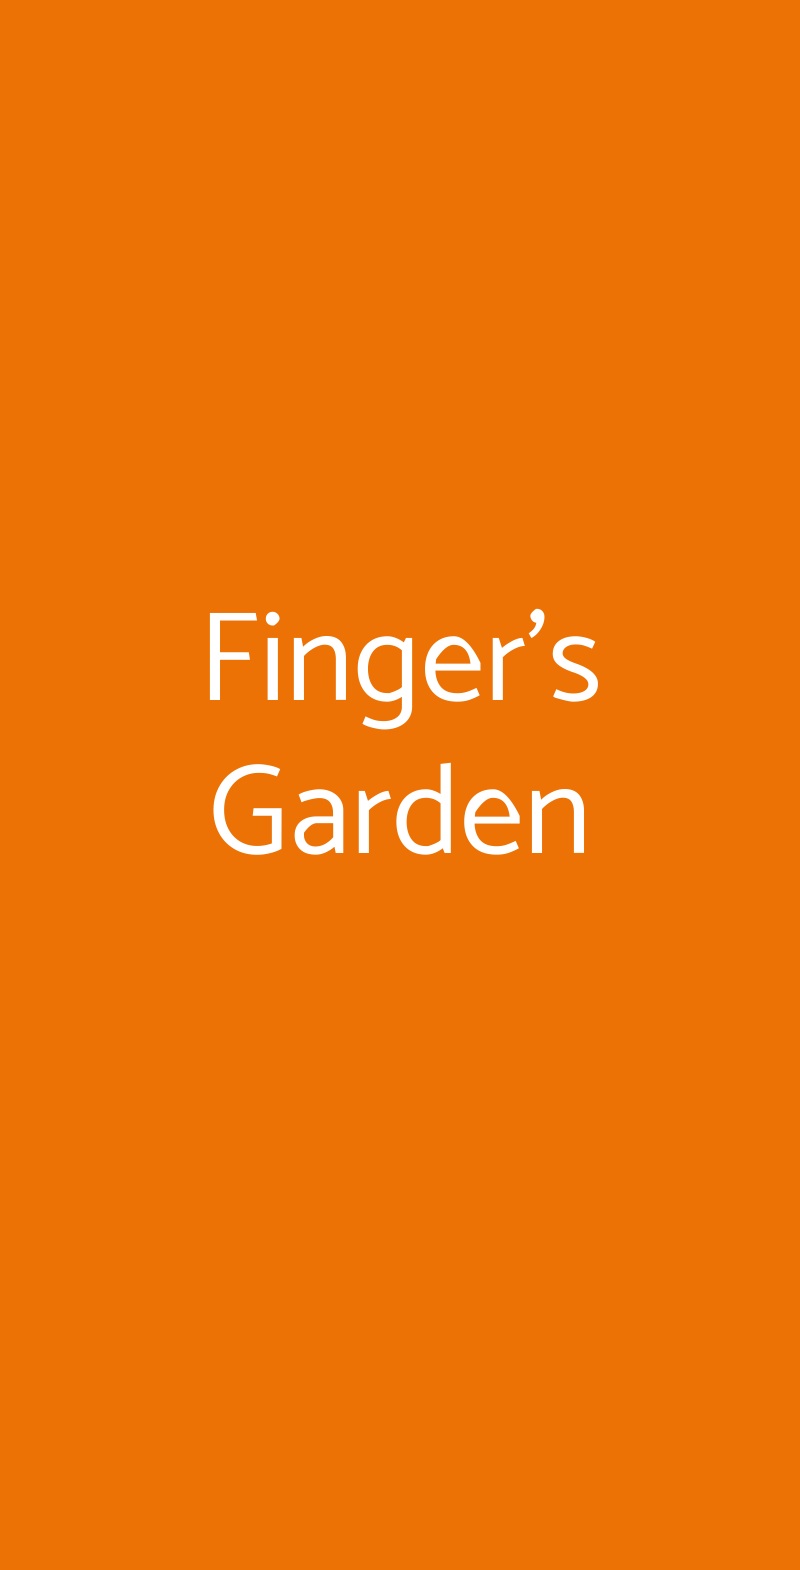 Finger's Garden Milano menù 1 pagina